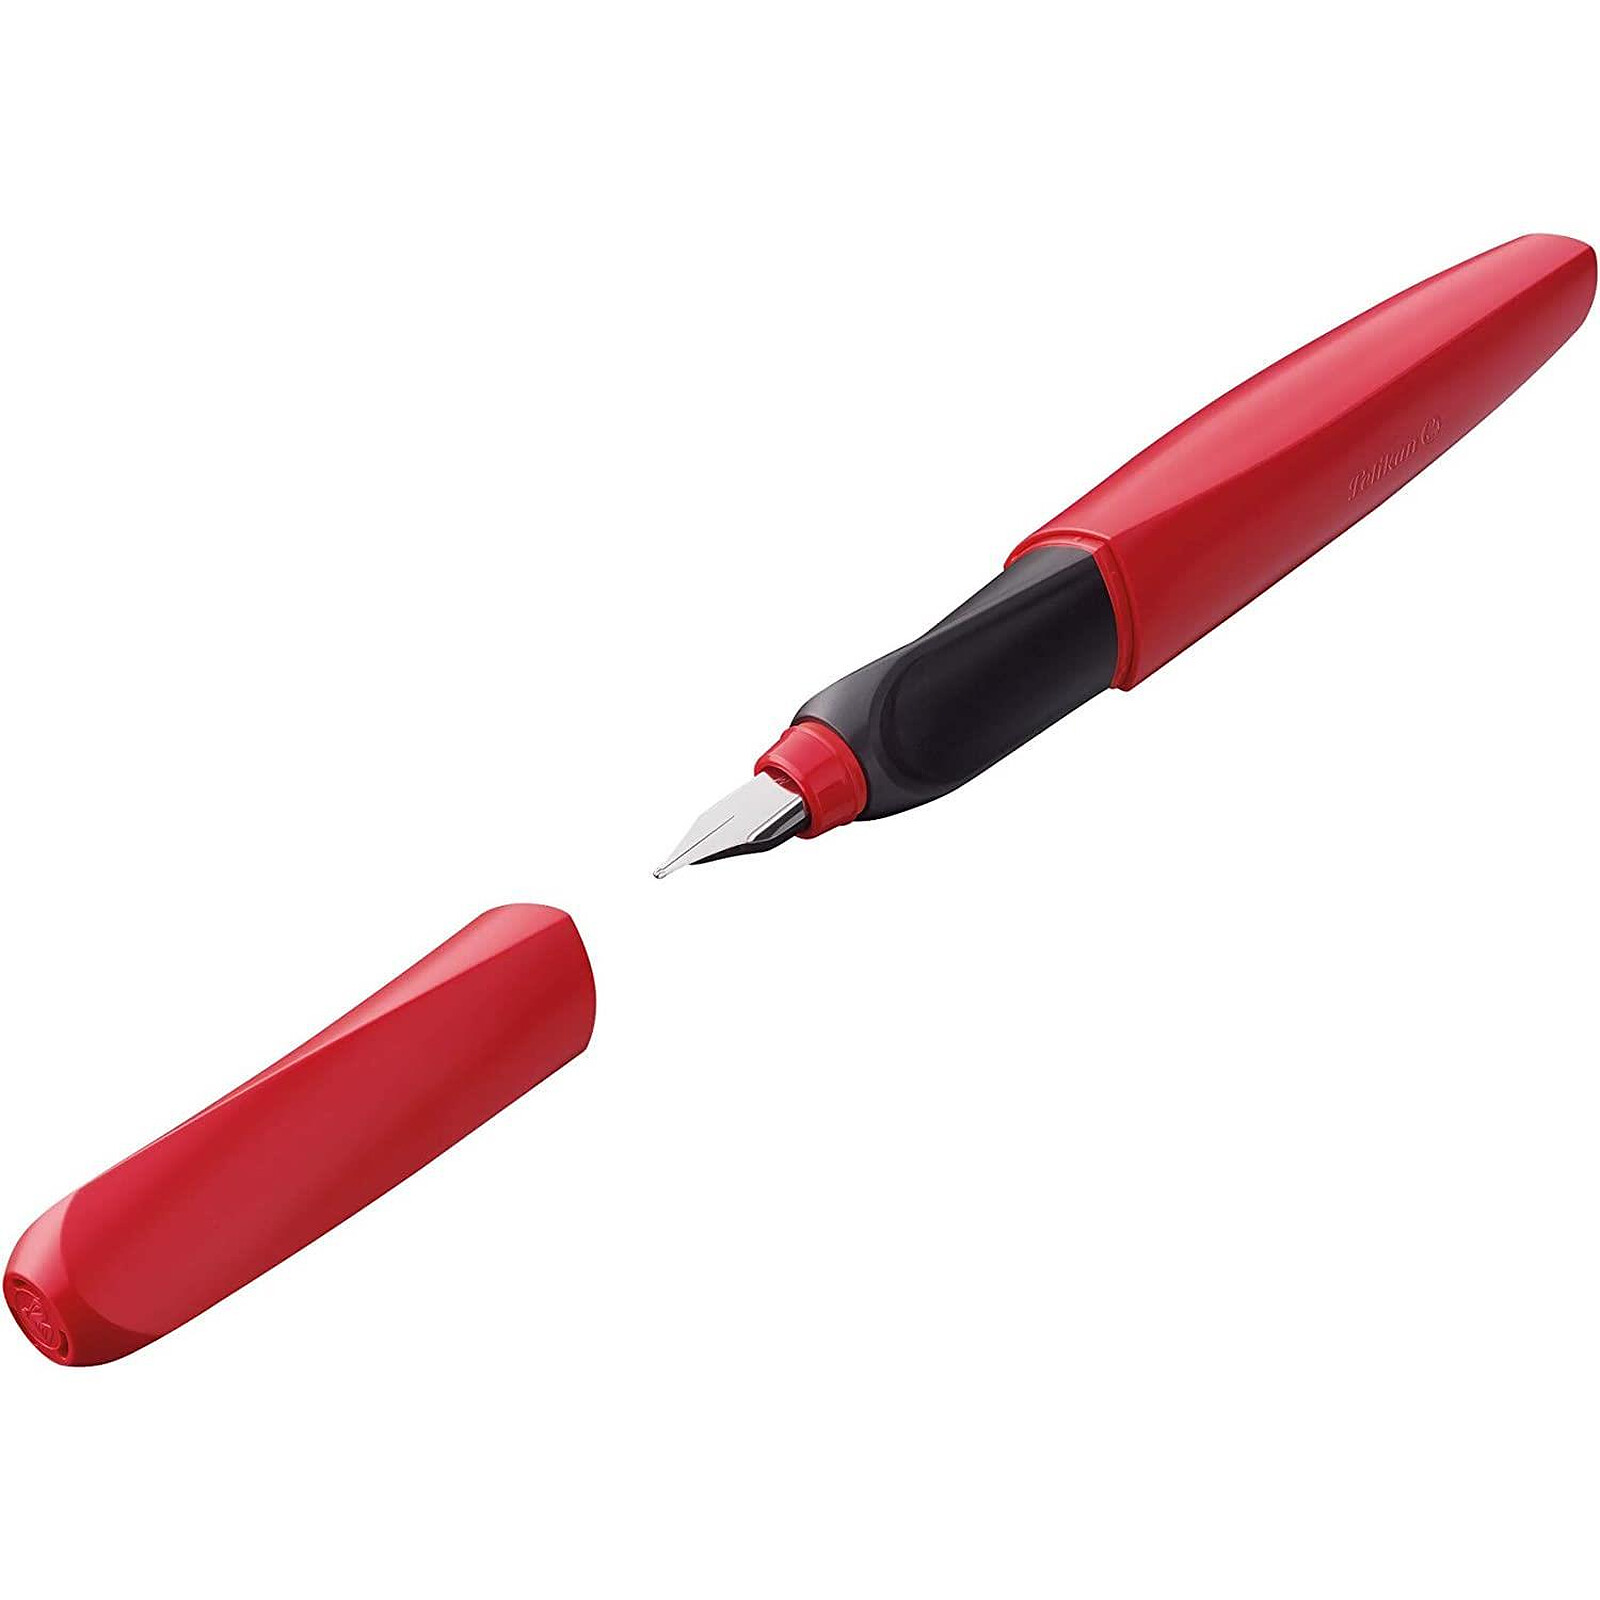 PILOT Lot de 3 recharges pour stylos pointe moyenne 0.7mm effaçable rouge  FriXion Ball + 1 stylo pointe moyenne 0.7mm rouge FriXion Ball pas cher 